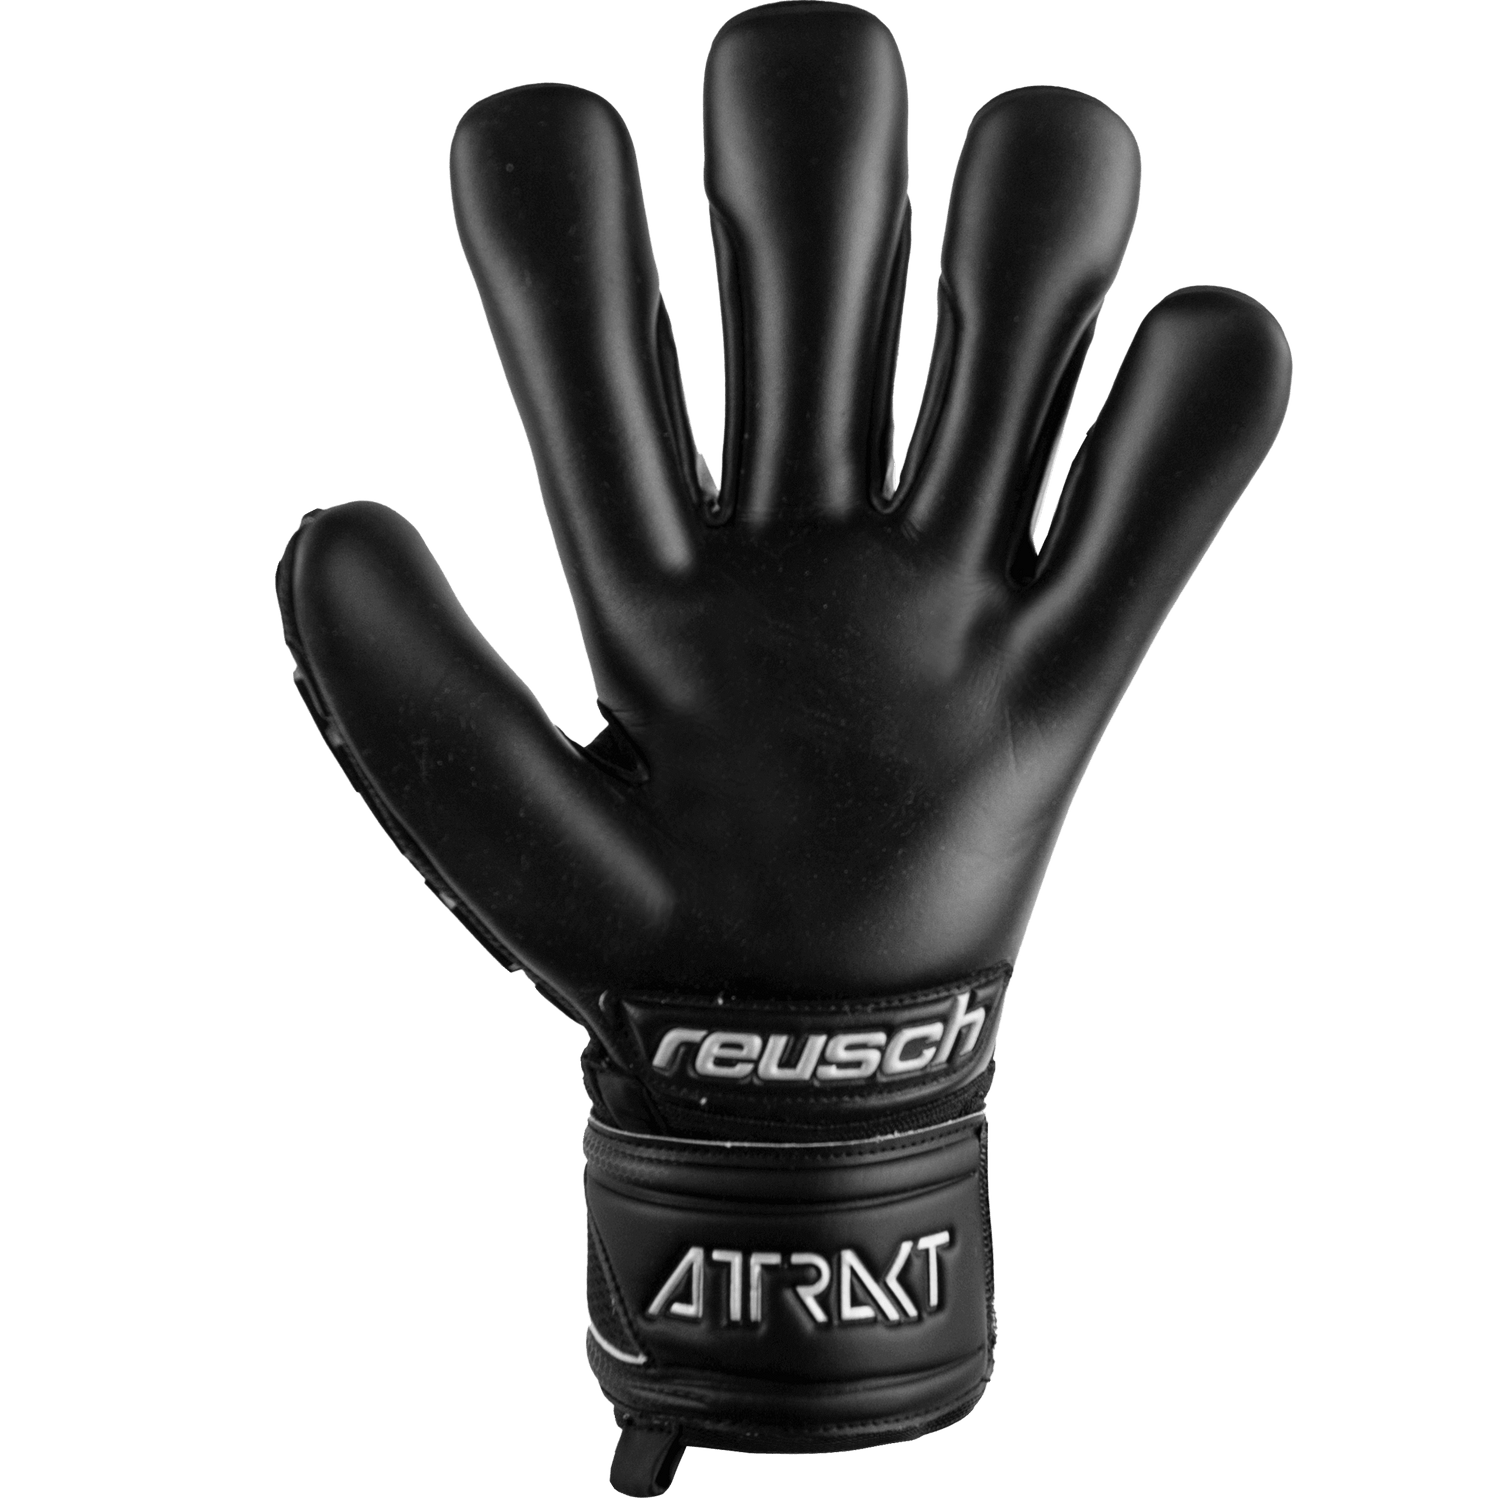 Reusch Attrakt Freegel Infinity Finger Support Goalkepper Gloves Black (Single - Inner)